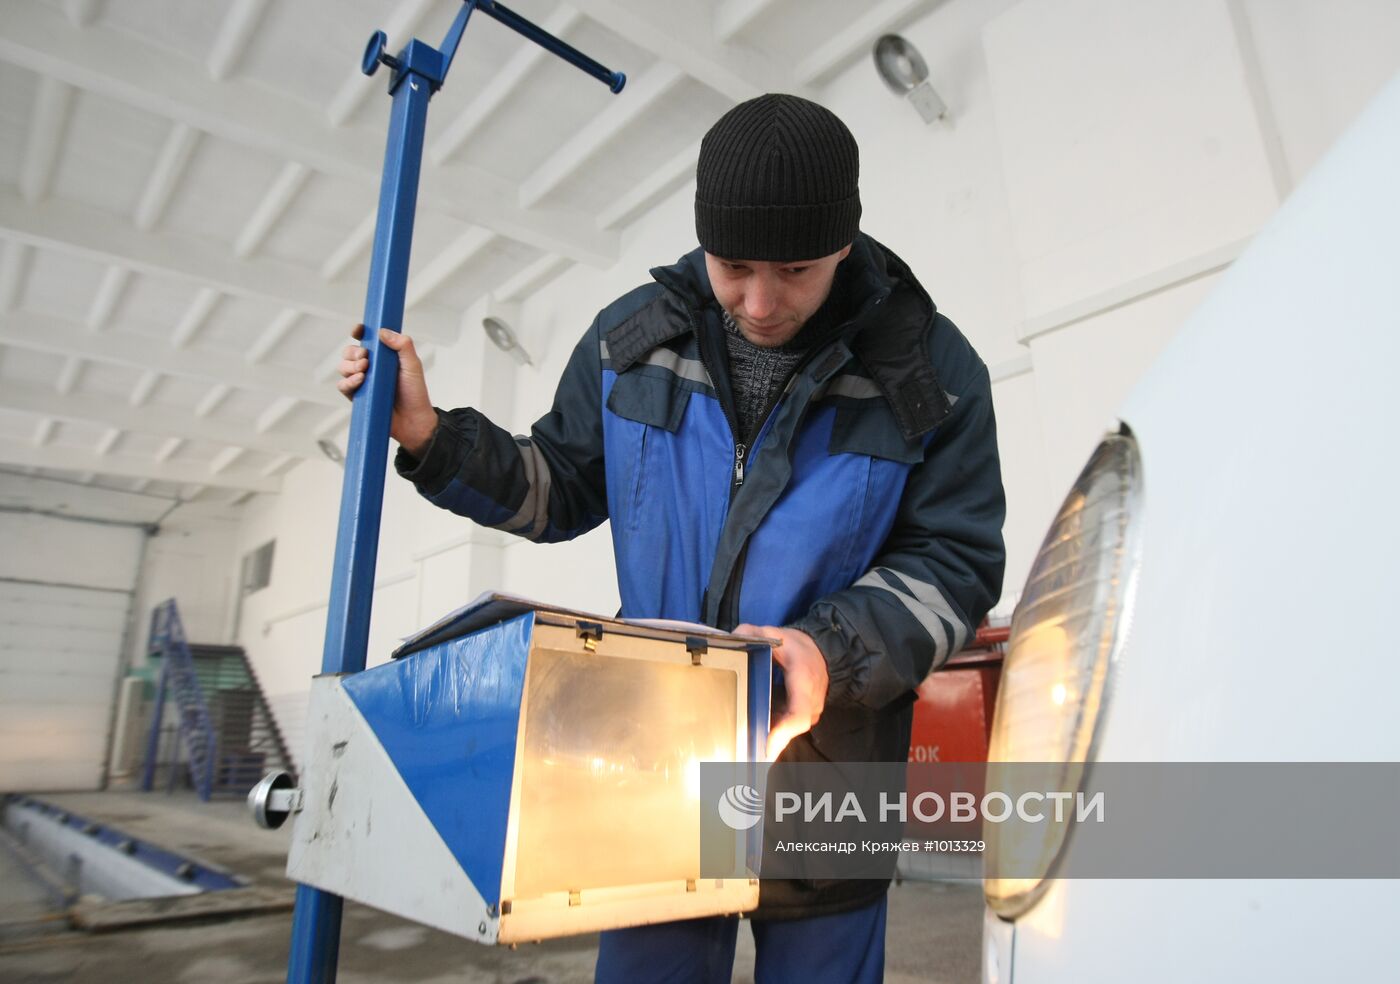 Работа пункта технического осмотра автомобилей в Новосибирске